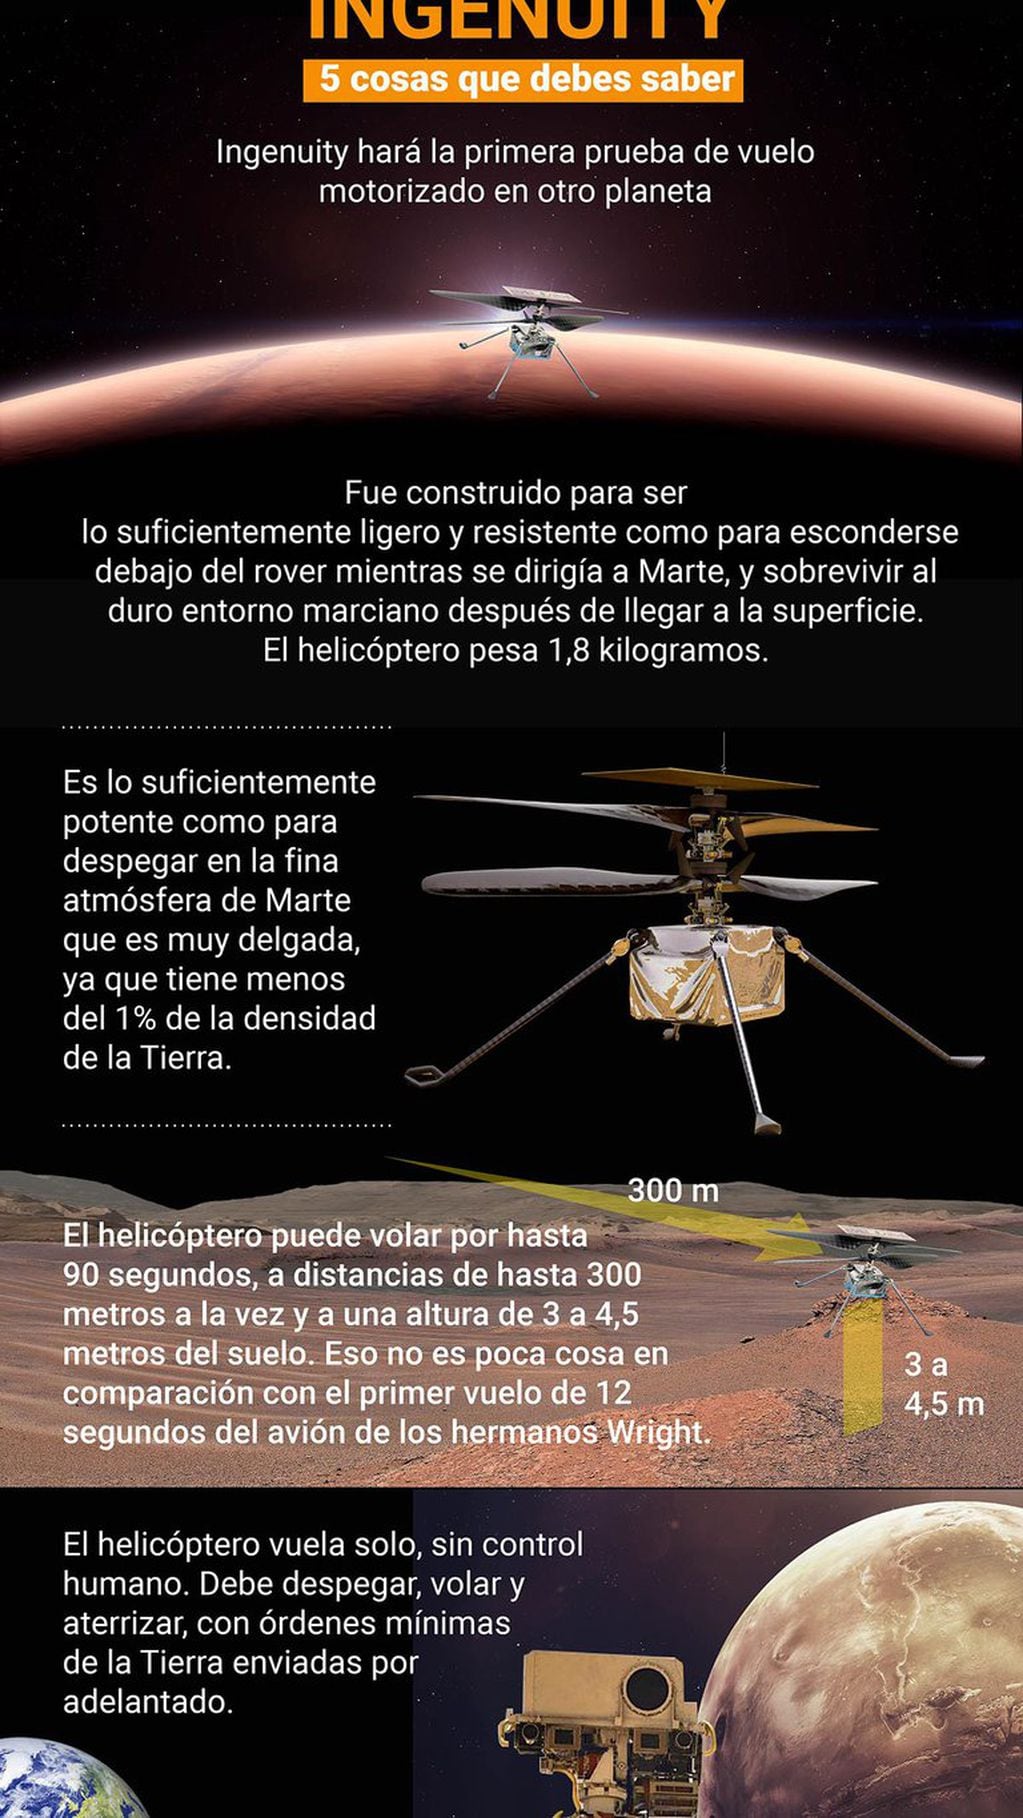 El helicóptero Ingenuity de la NASA realizó exitosamente su primer vuelo en Marte